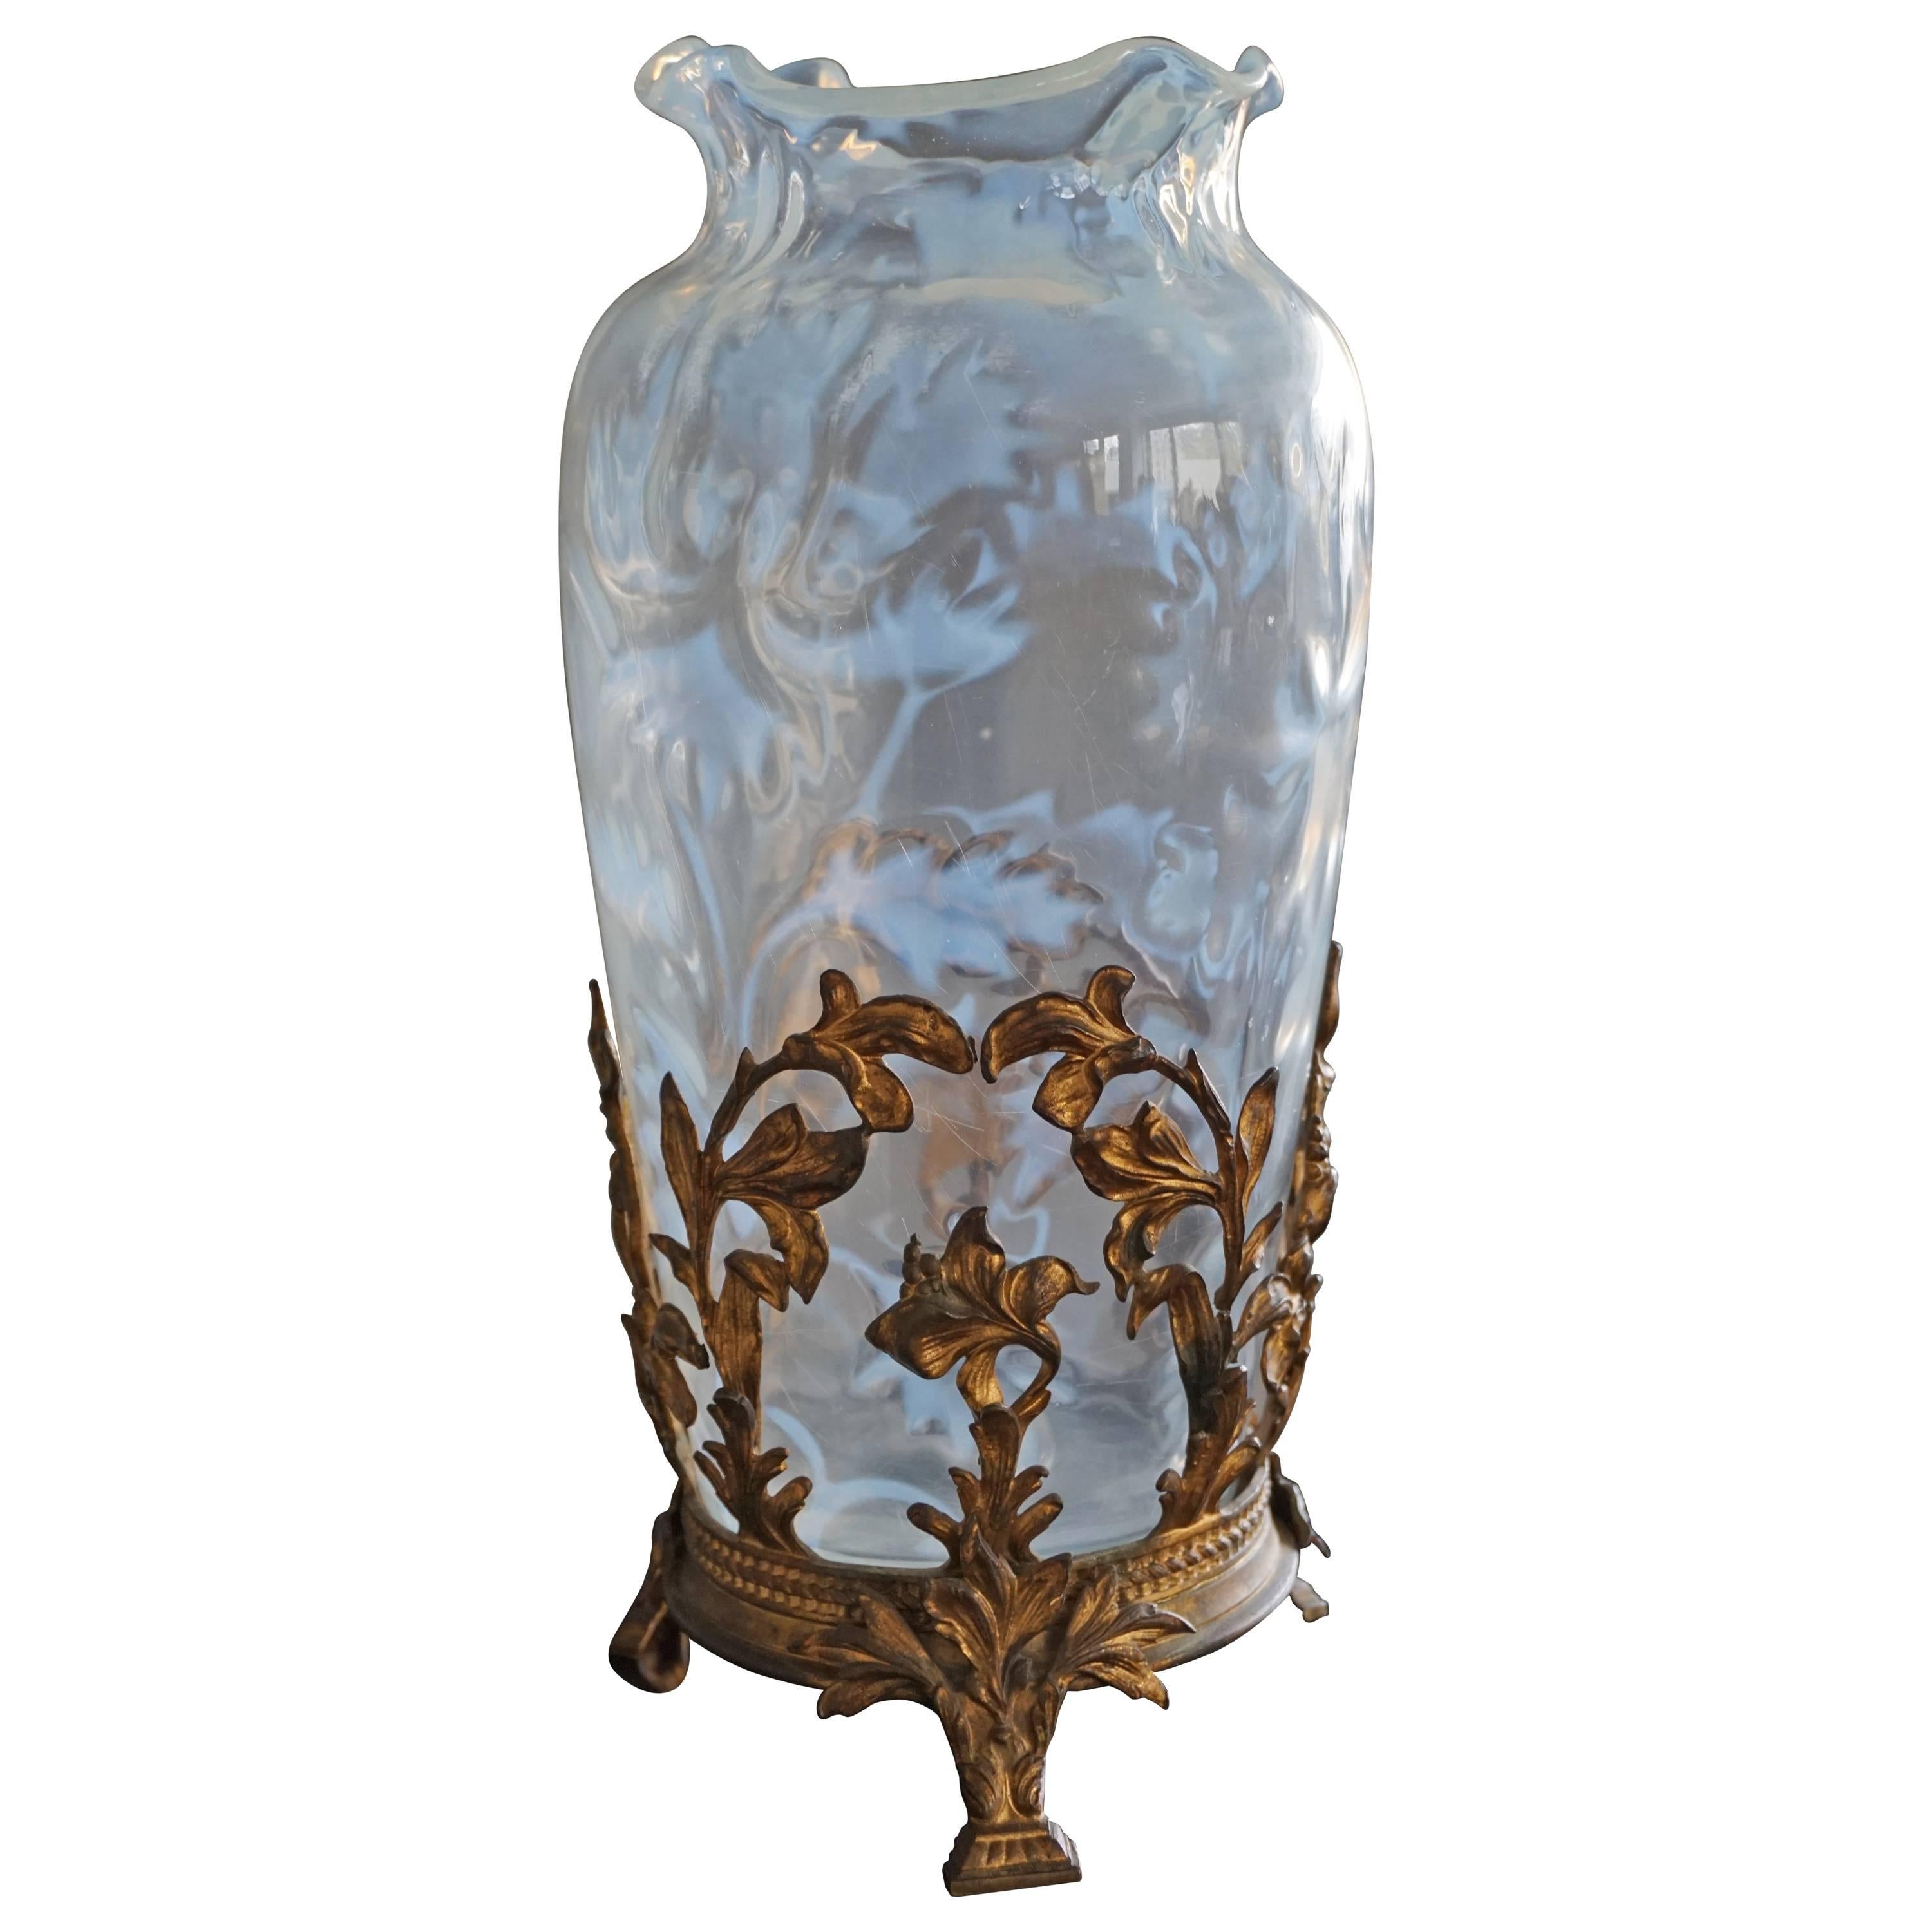 Antique Art Nouveau Iridescent Glass Vase Amazing Design with a Gilt Bronze Base